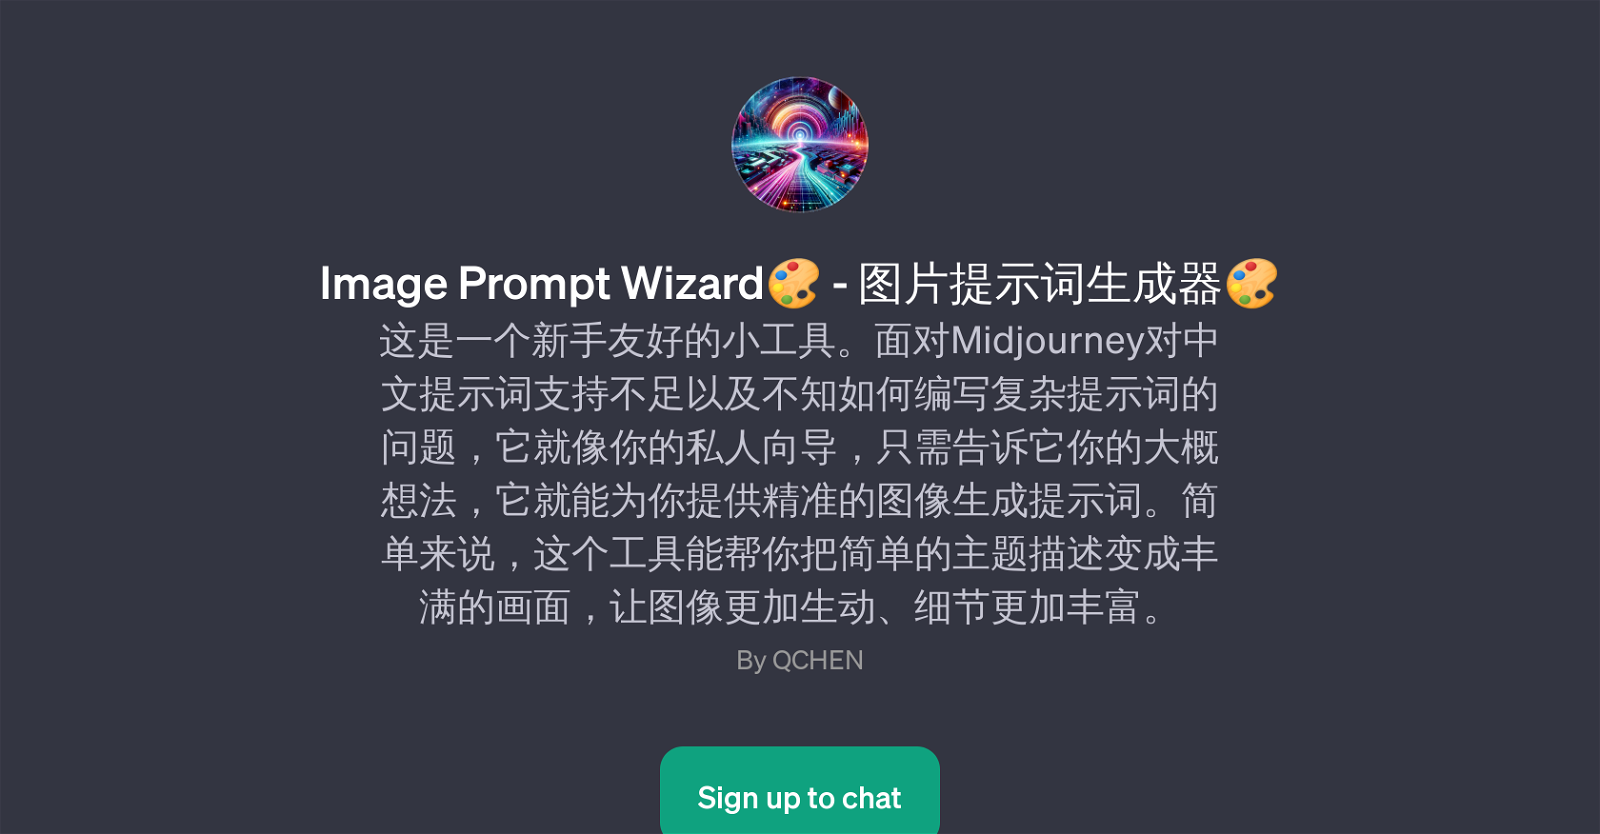 Image Prompt Wizard website